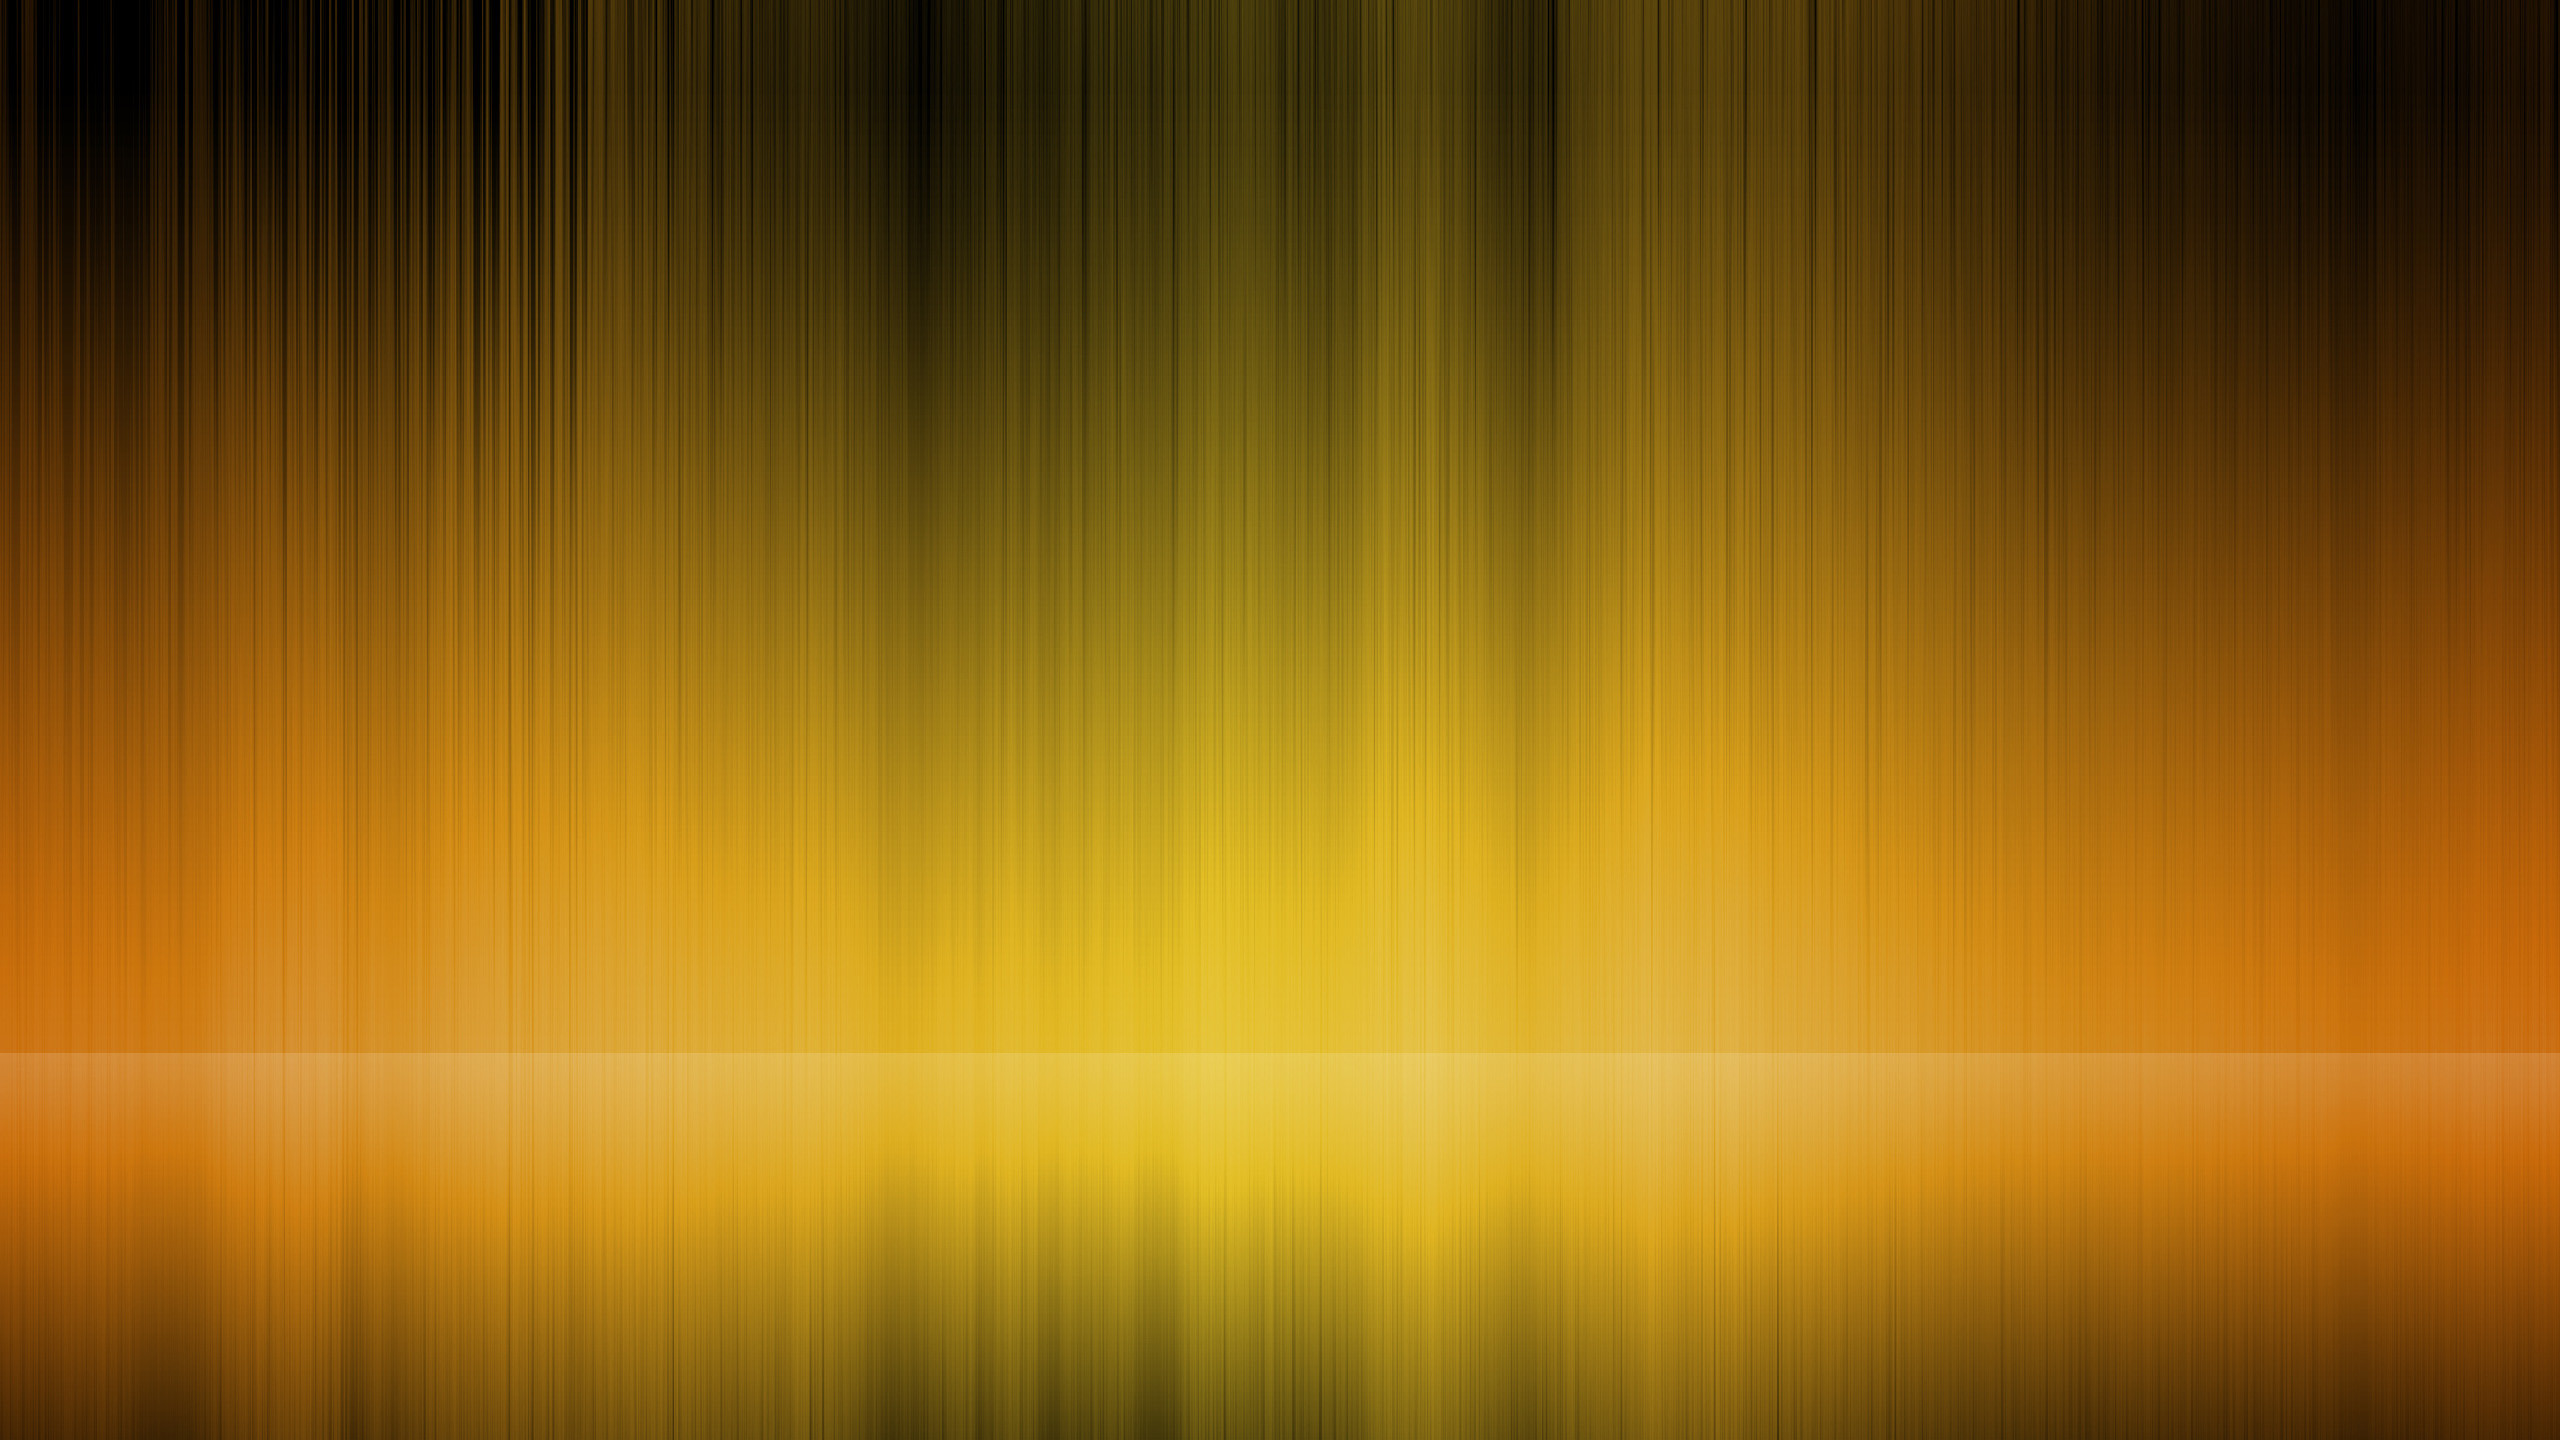 2560x1440 Yellow-Beckground-Hd-wallpaper-74459992.jpg